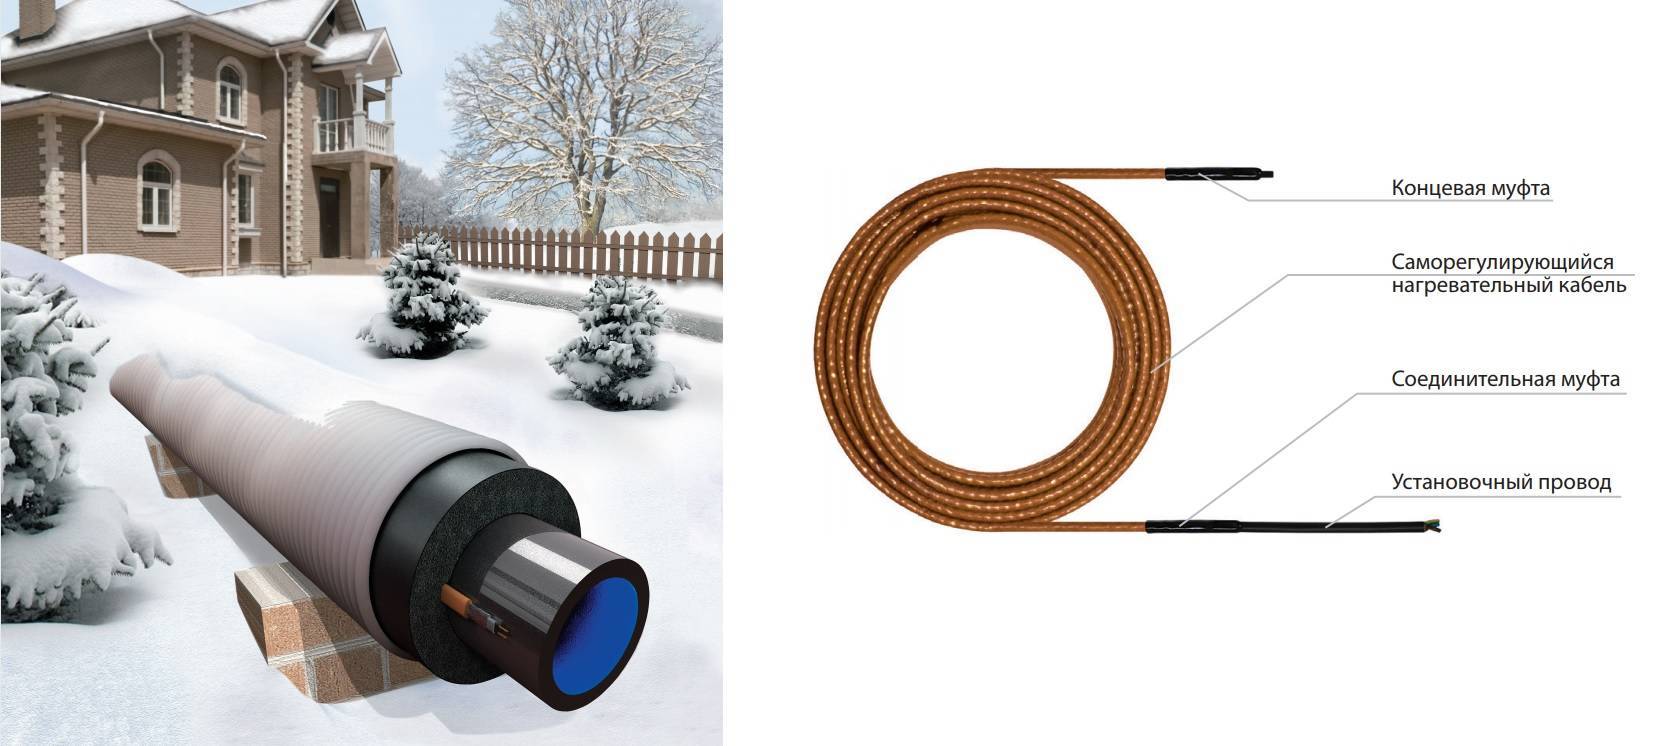 Обогрев канализационных труб греющим кабелем: рассмотрим виды устройств, их достоинства и недостатки, особенности монтажа